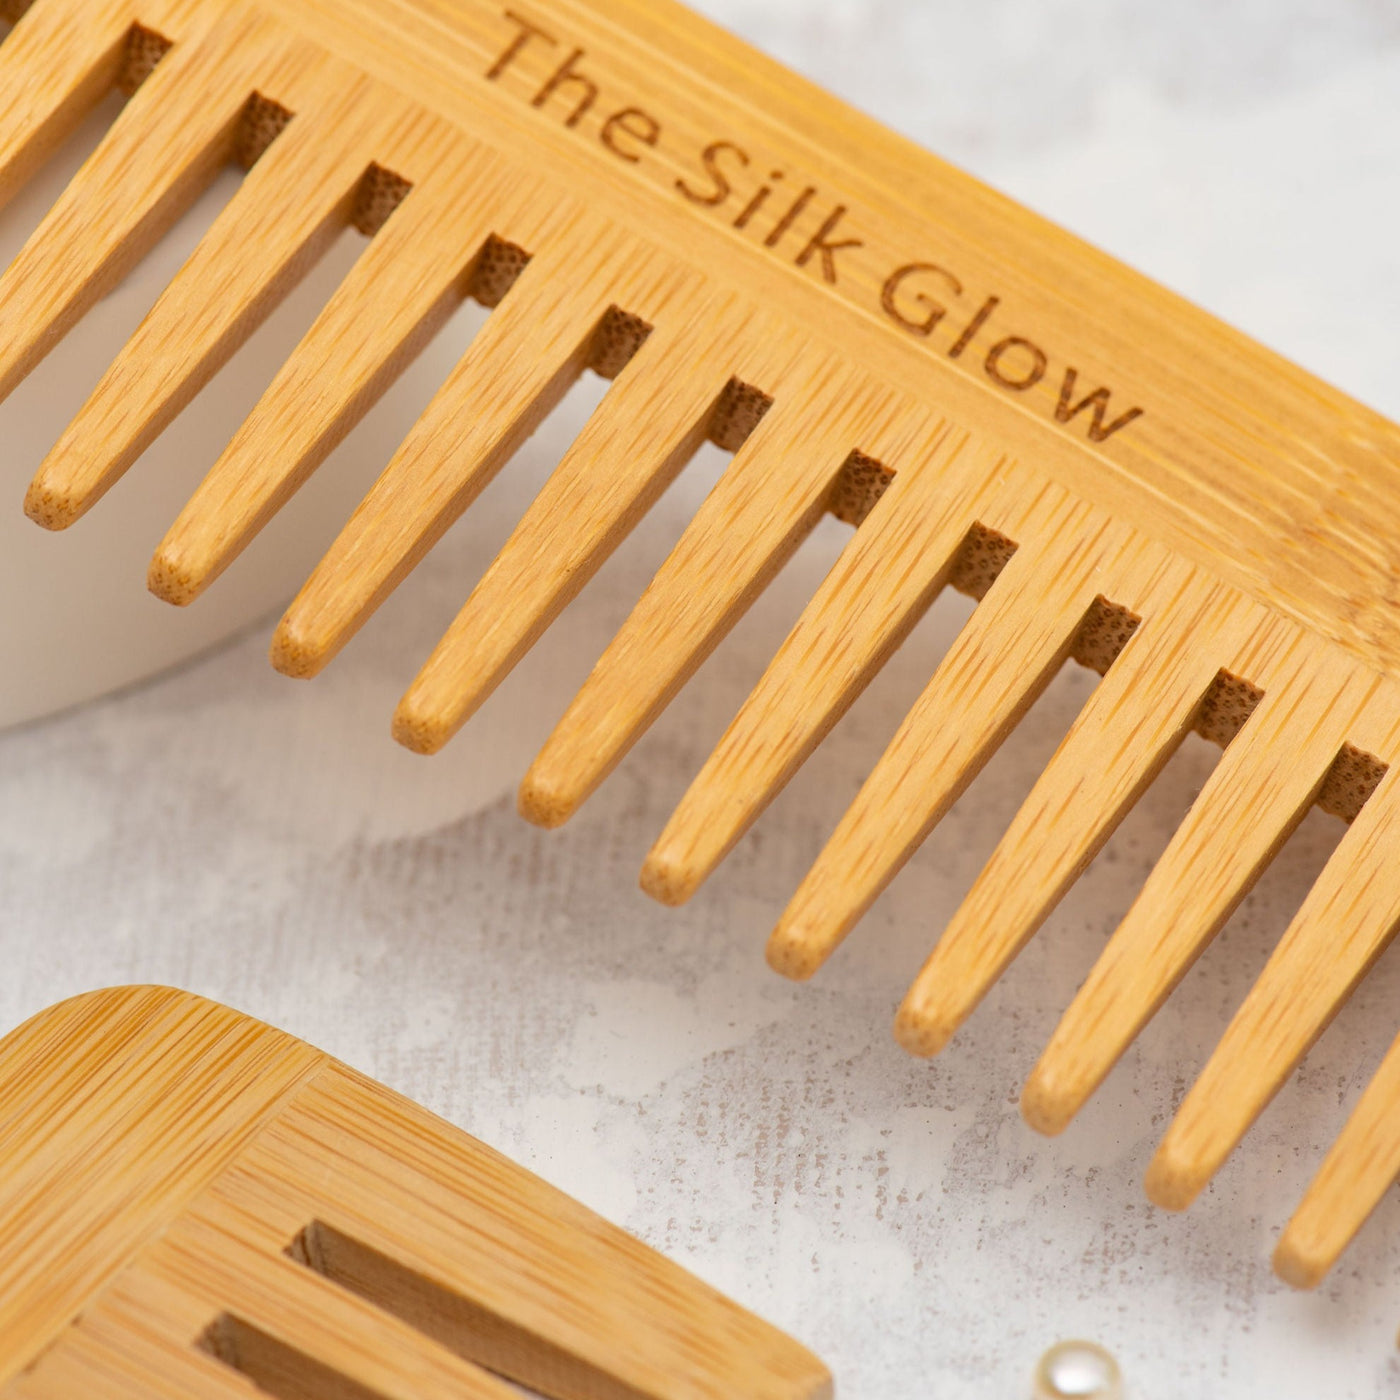 Scalp Massager Comb - The Silk Glow